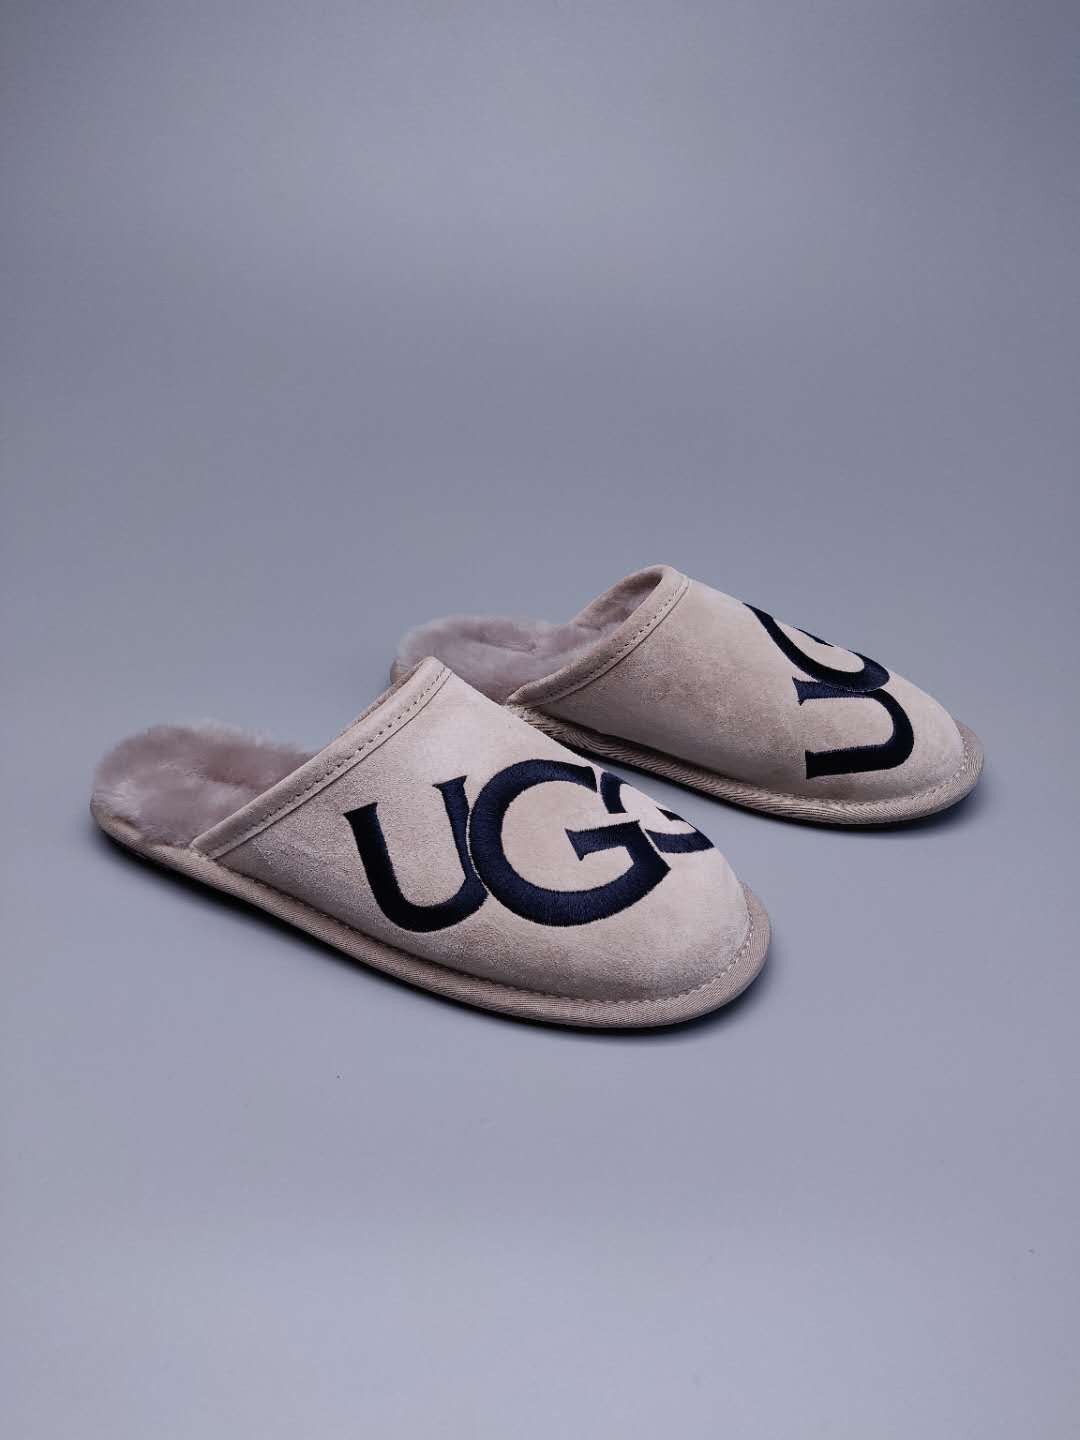 UGG Women's Shoes 132